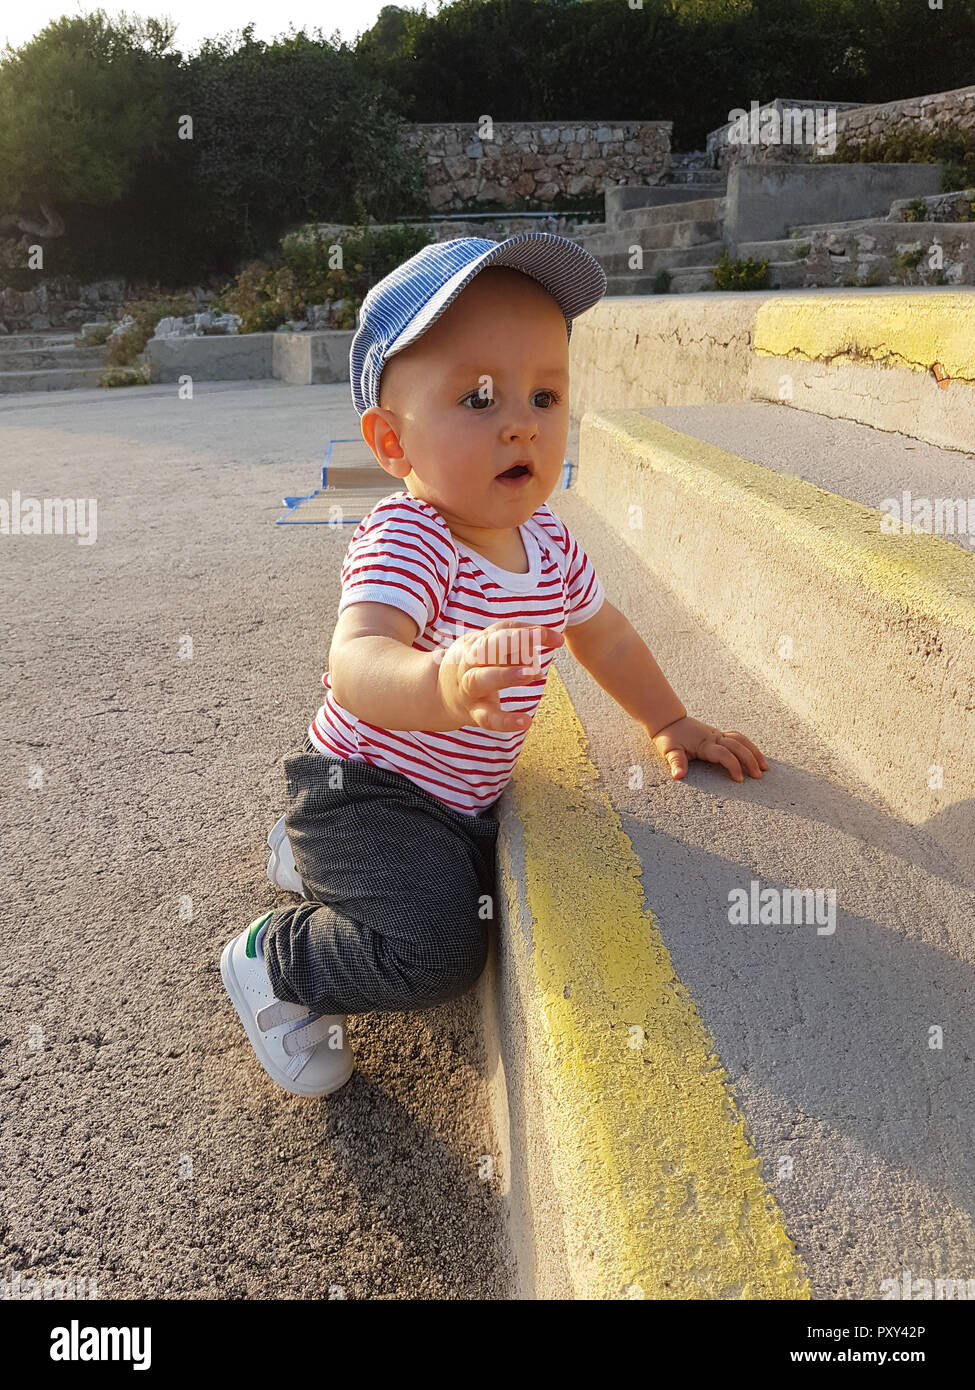 Mignon Bébé Garçon 1 ans portant une casquette à l'envers et les vêtements  à rayures, Portrait, bébé debout sur l'escalier Photo Stock - Alamy